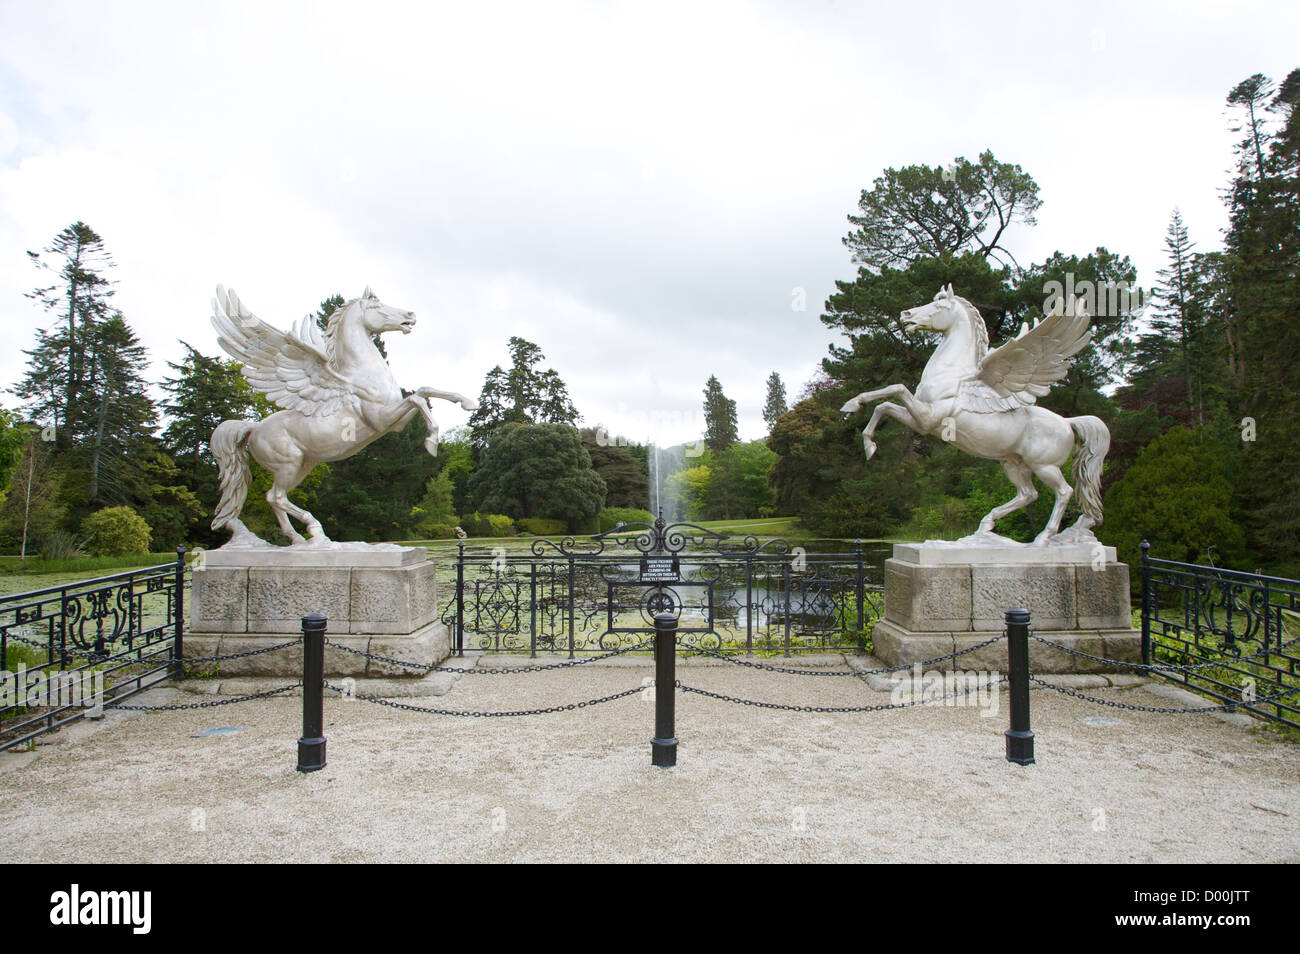 Parque con dos esculturas de caballo alado Foto de stock